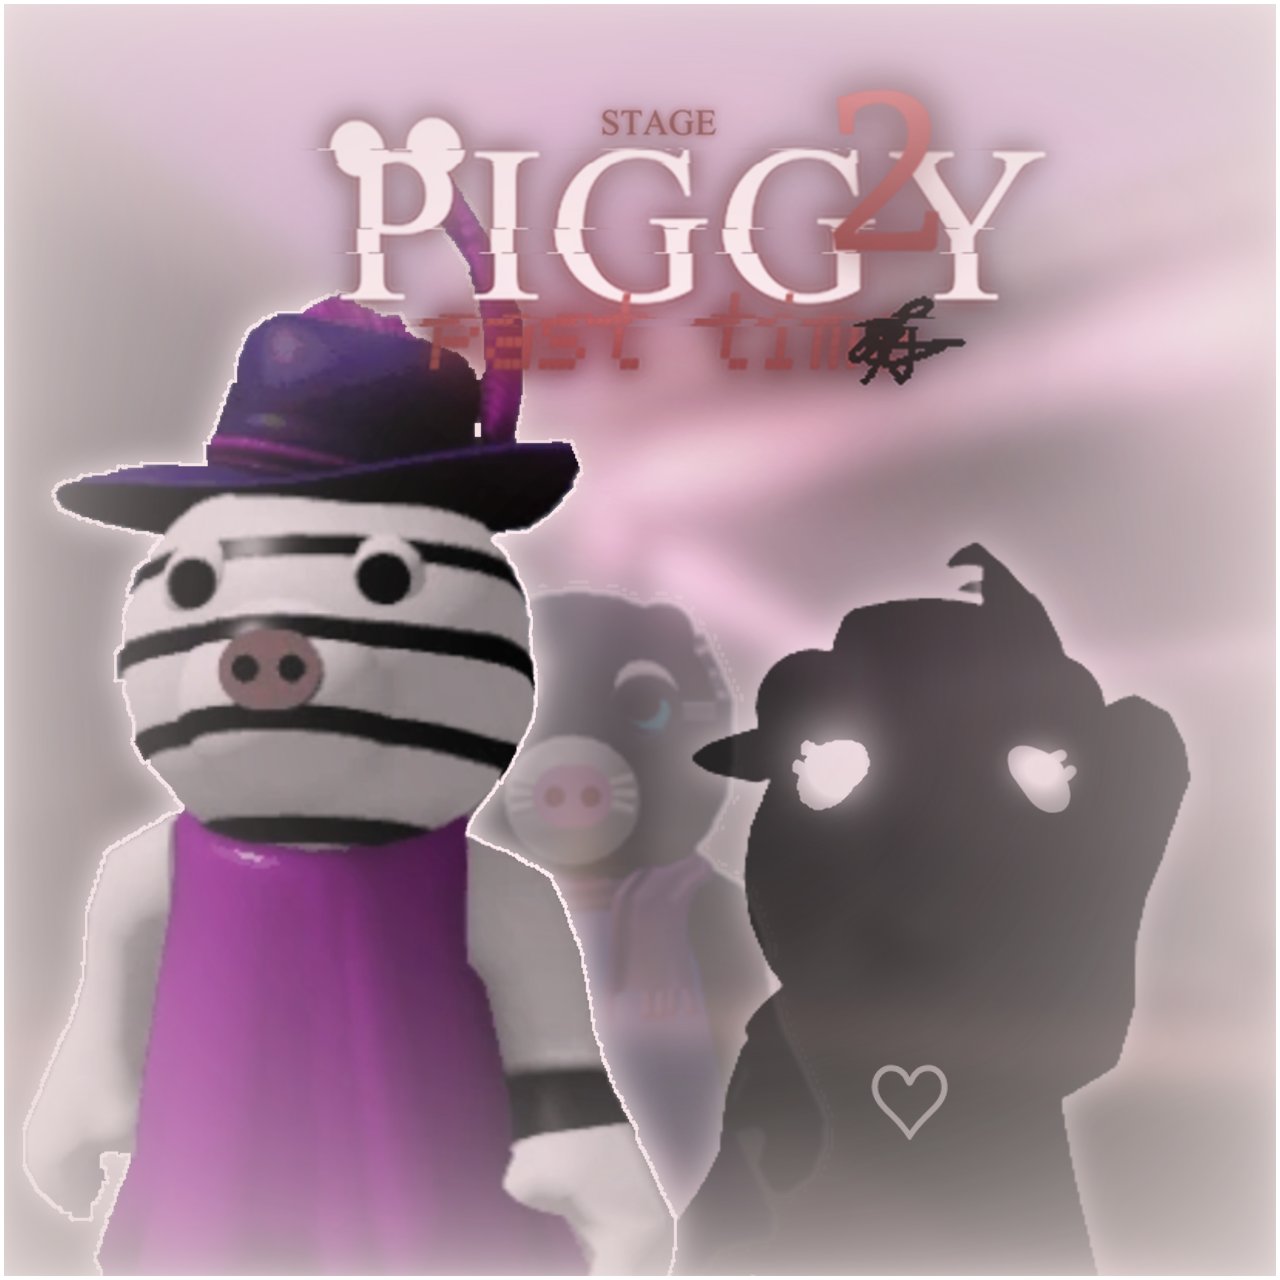 Piggy News on X: 🎉PIGGY ANNIVERSARIES🎉 The Piggy experience was, piggy 